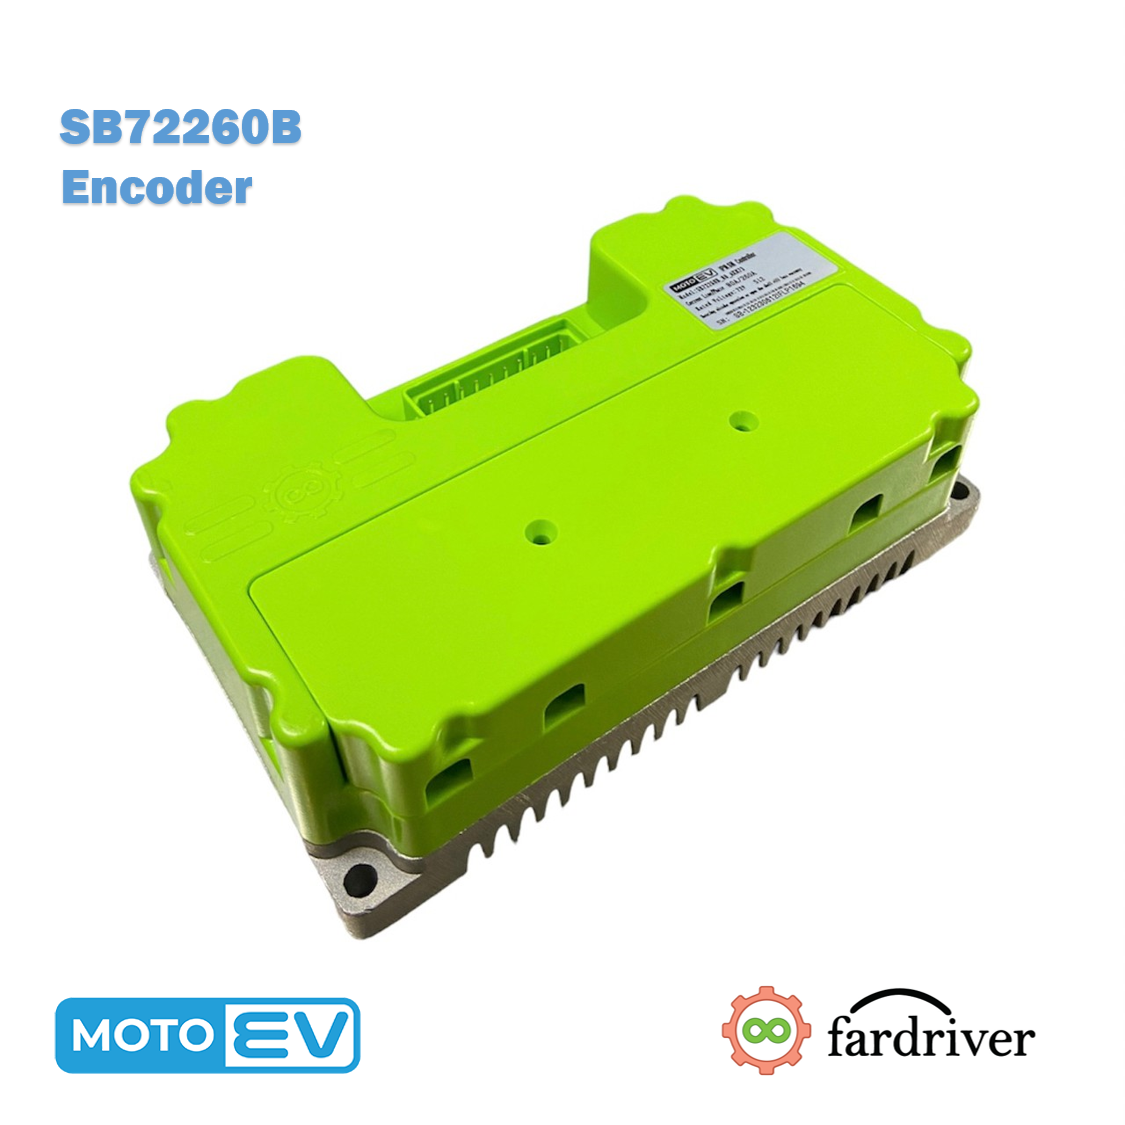 SB72260B Encoder 80A/260A